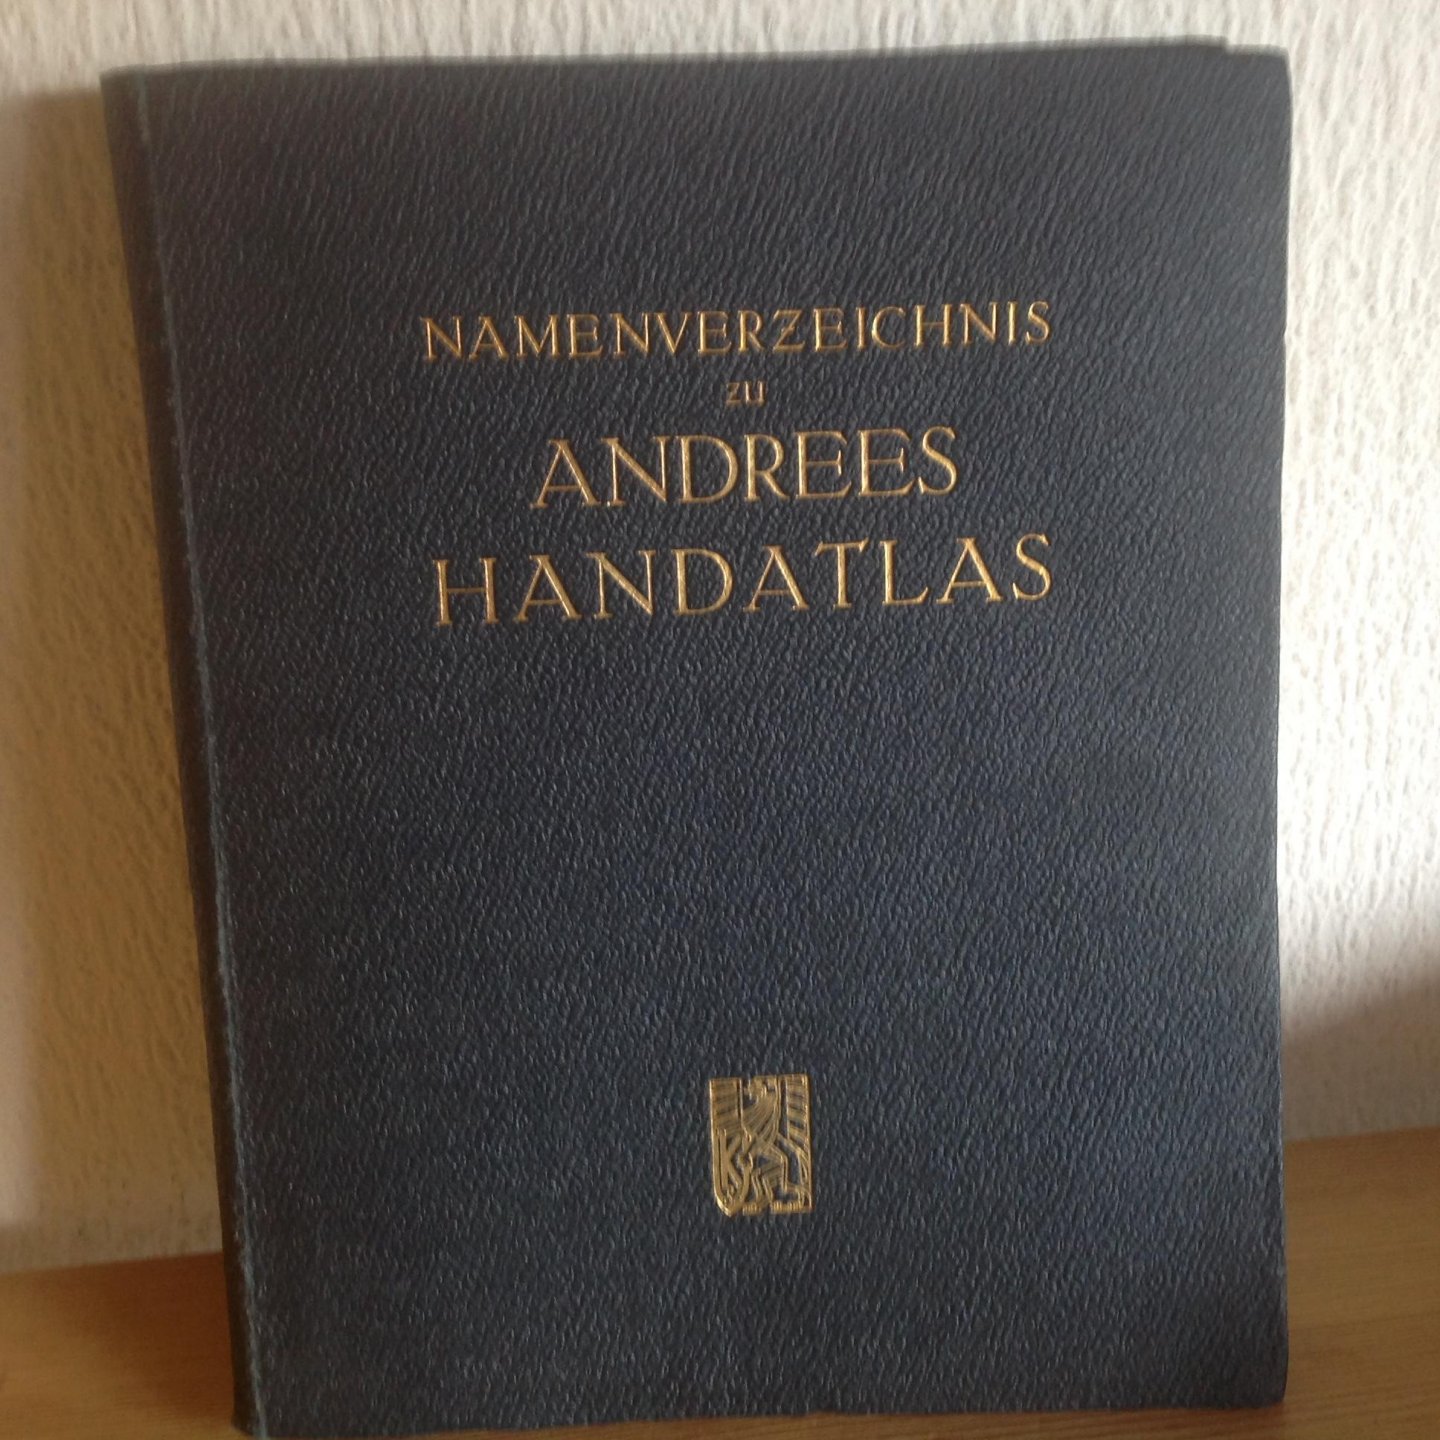  - Namenverzeichnis zu ANDREES HANDATLAS ,Sechste Auflage